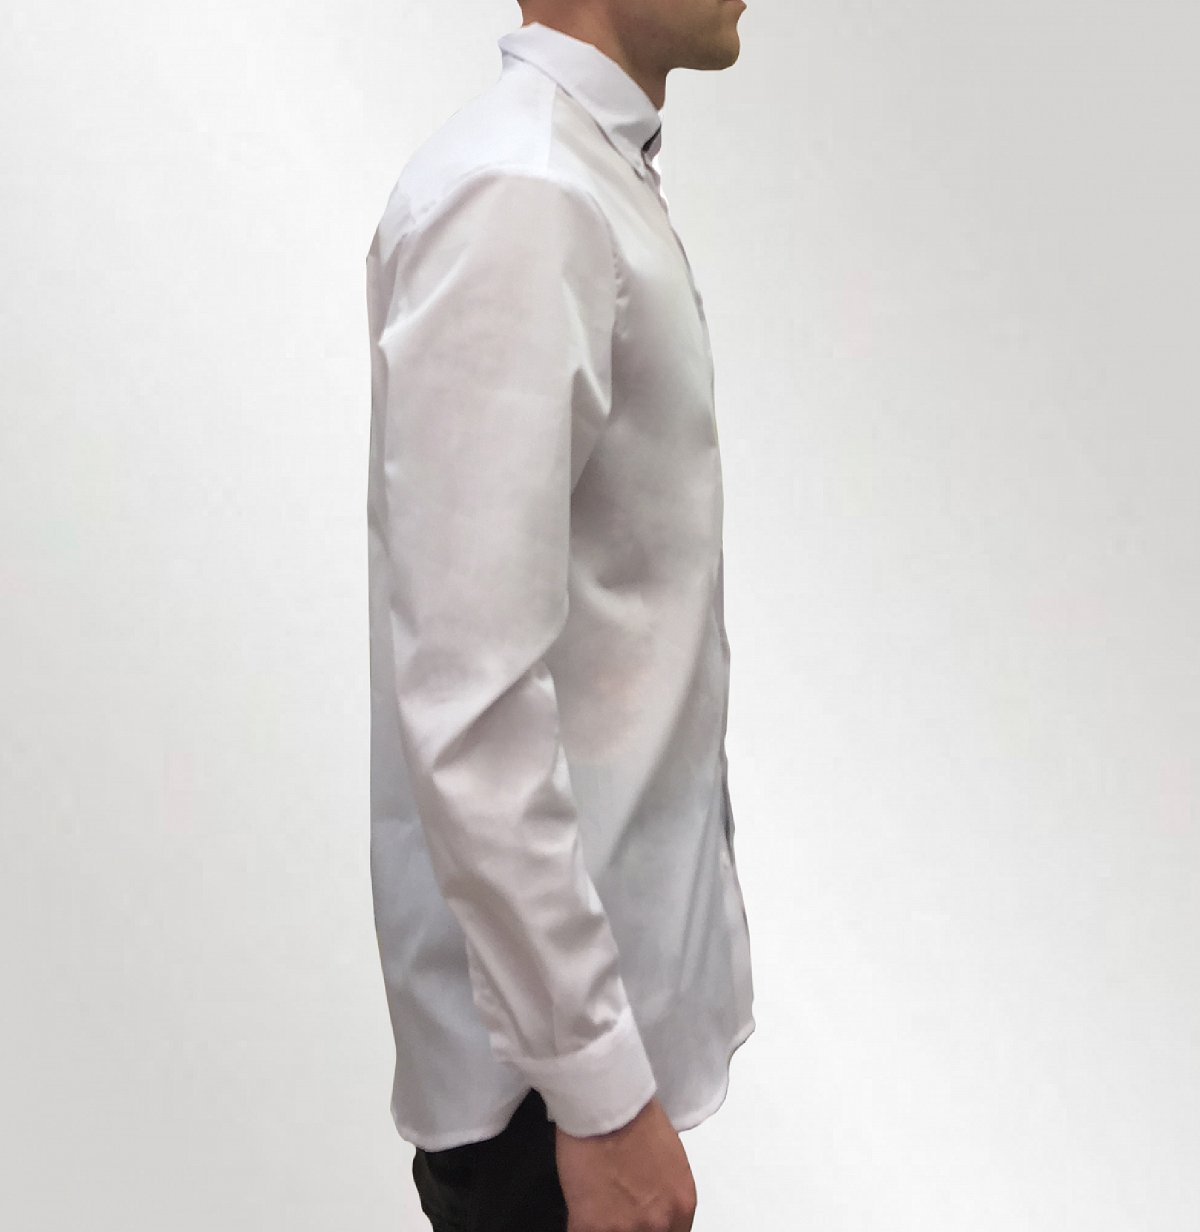 Пошив рубашек - пример модели: белая рубашка с логотипом